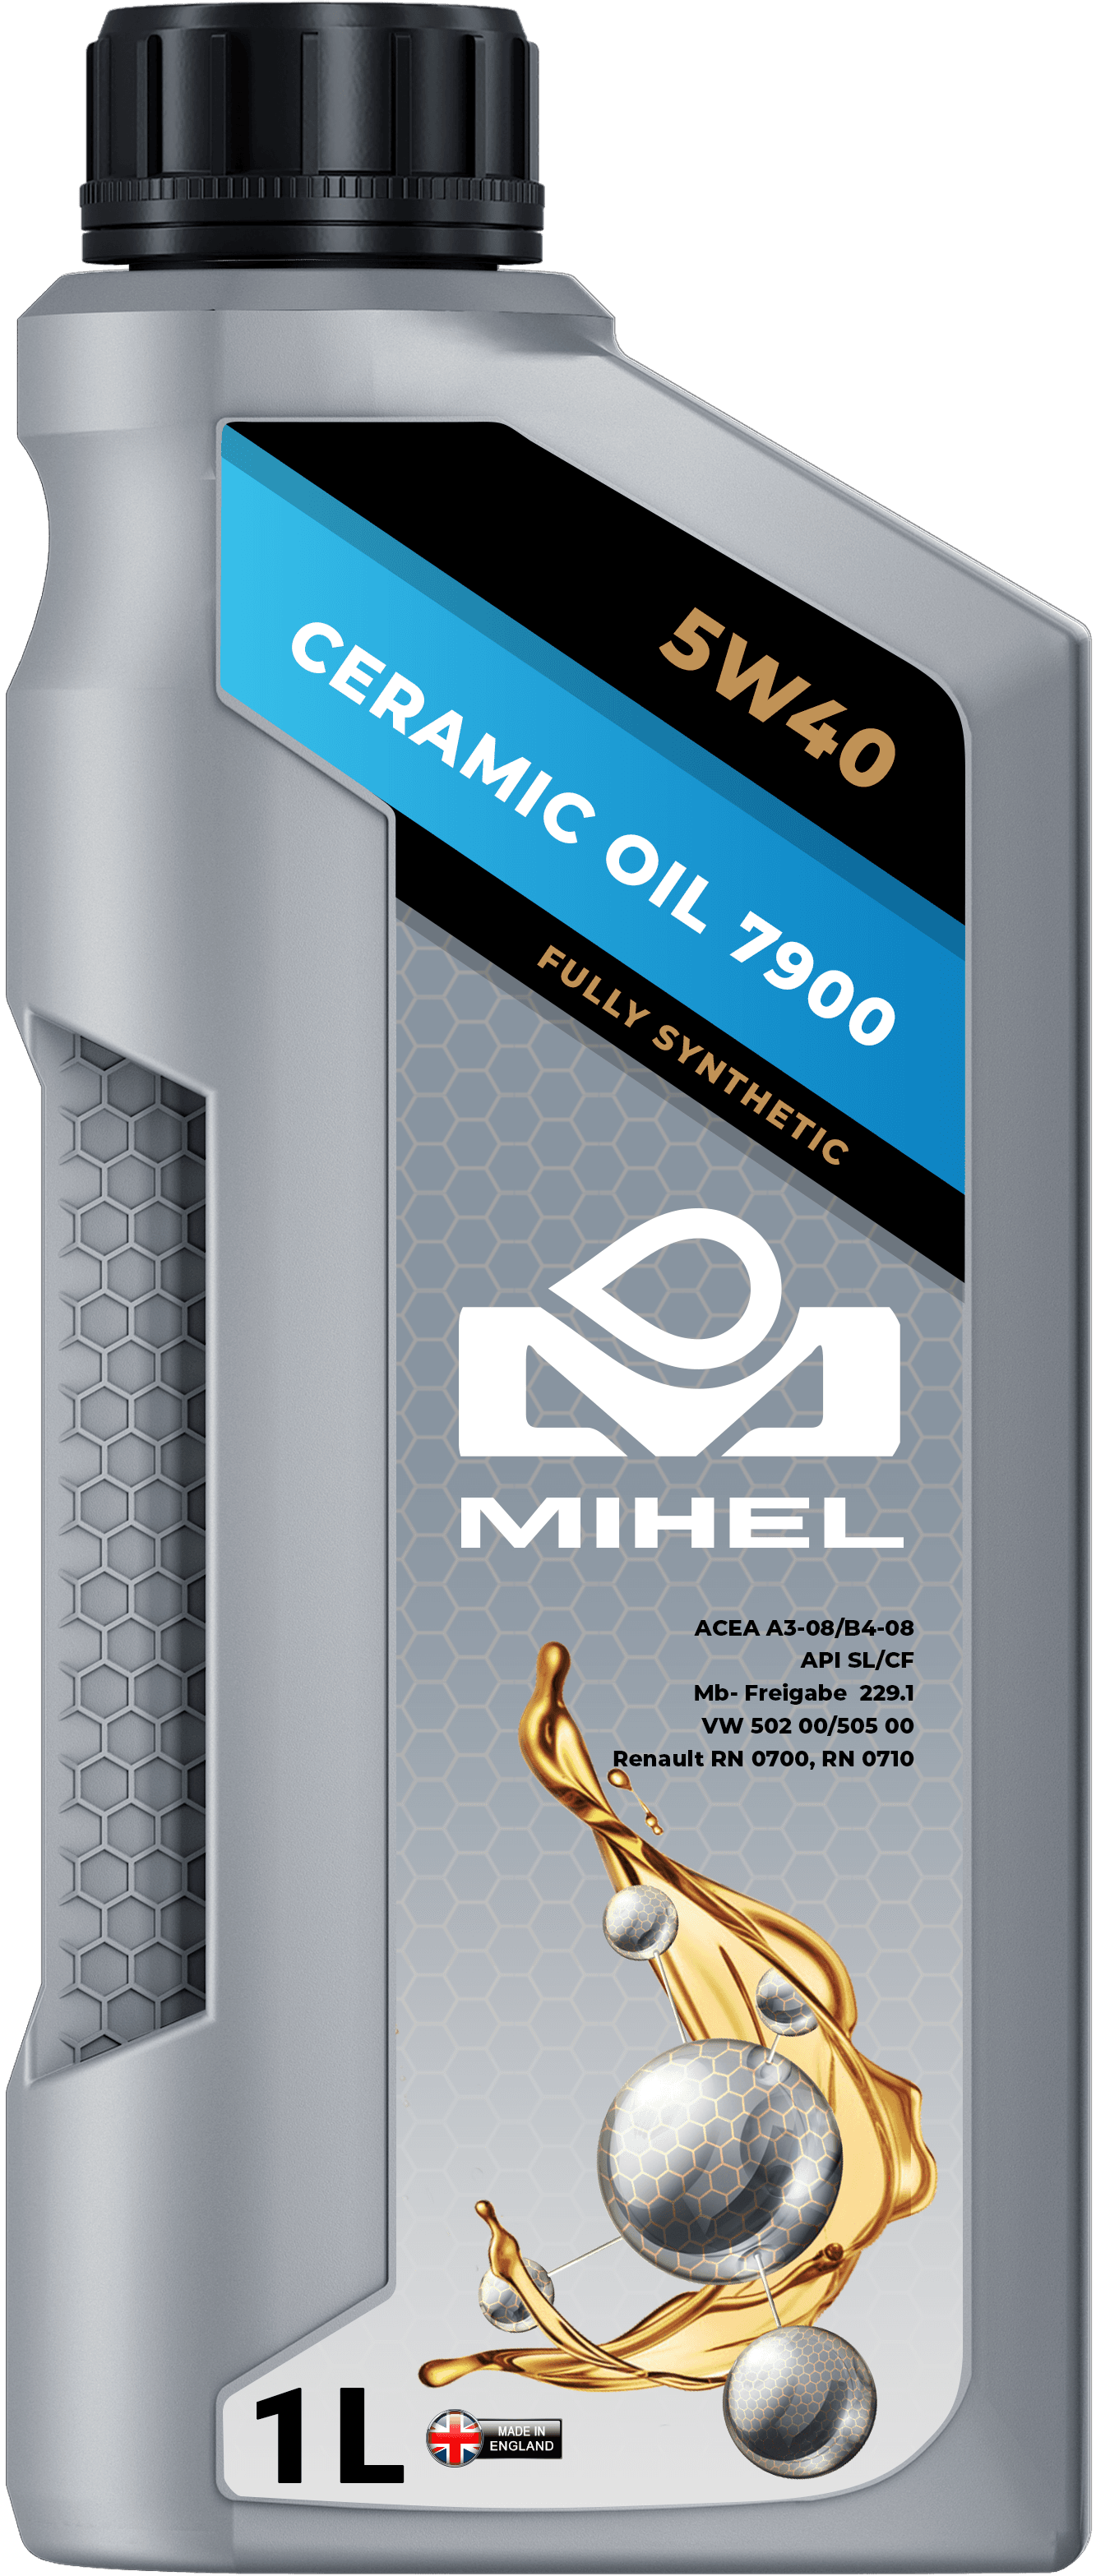 MIHEL Ceramic Oil® 7900 5W40